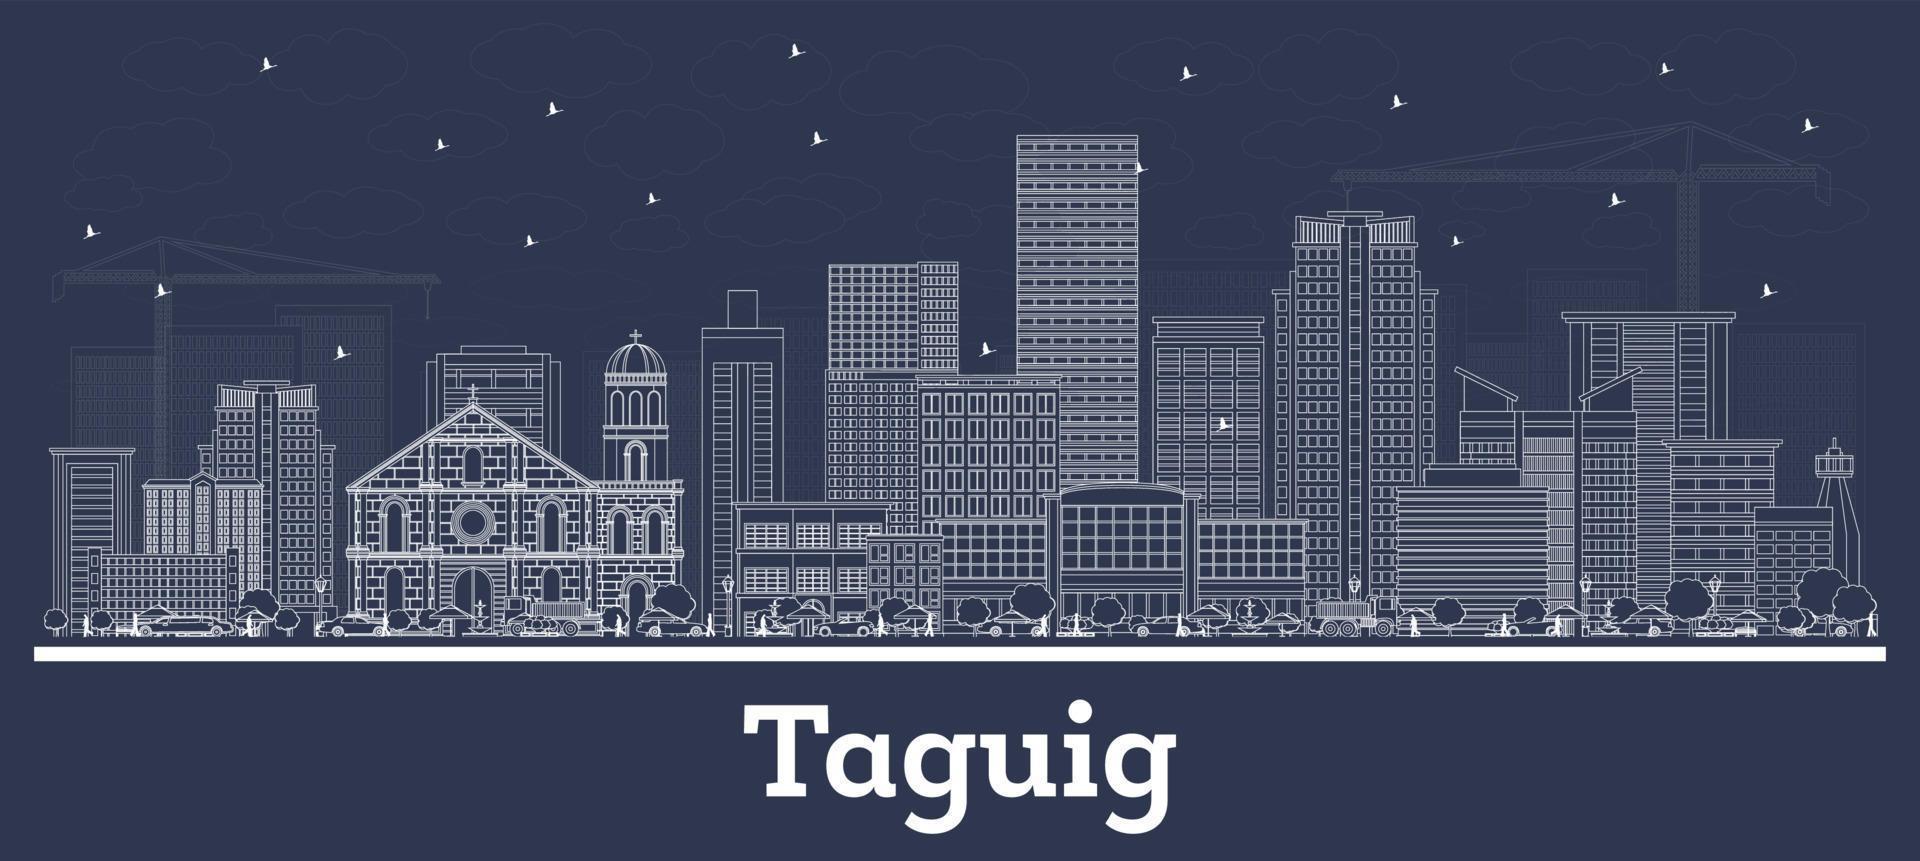 delinear el horizonte de la ciudad de taguig filipinas con edificios blancos. vector